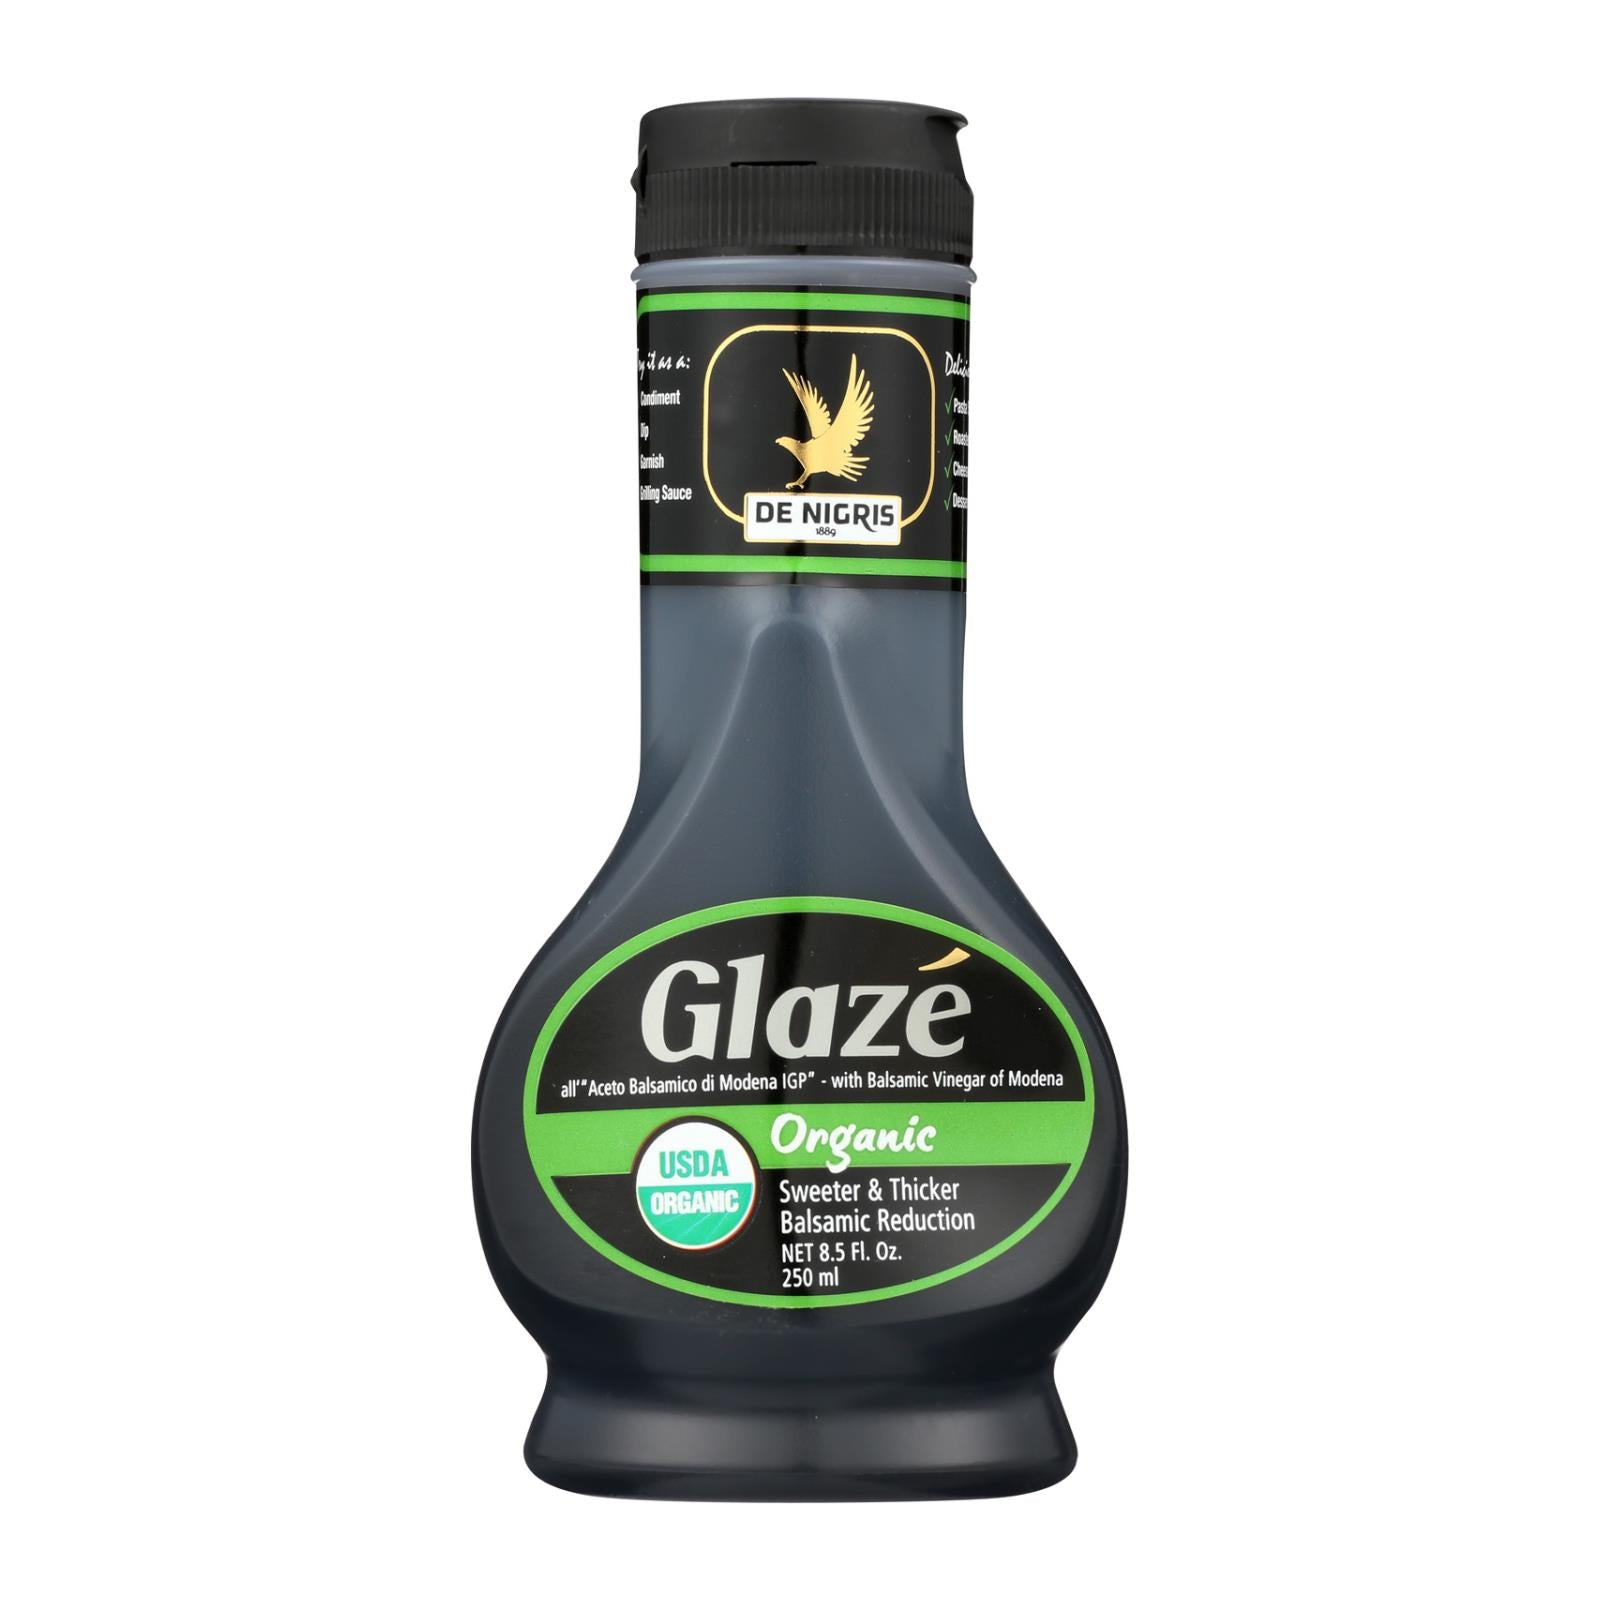 De Nigris - Organic Balsamic Glaze - Case Of 6 - 8.5 Fl Oz.